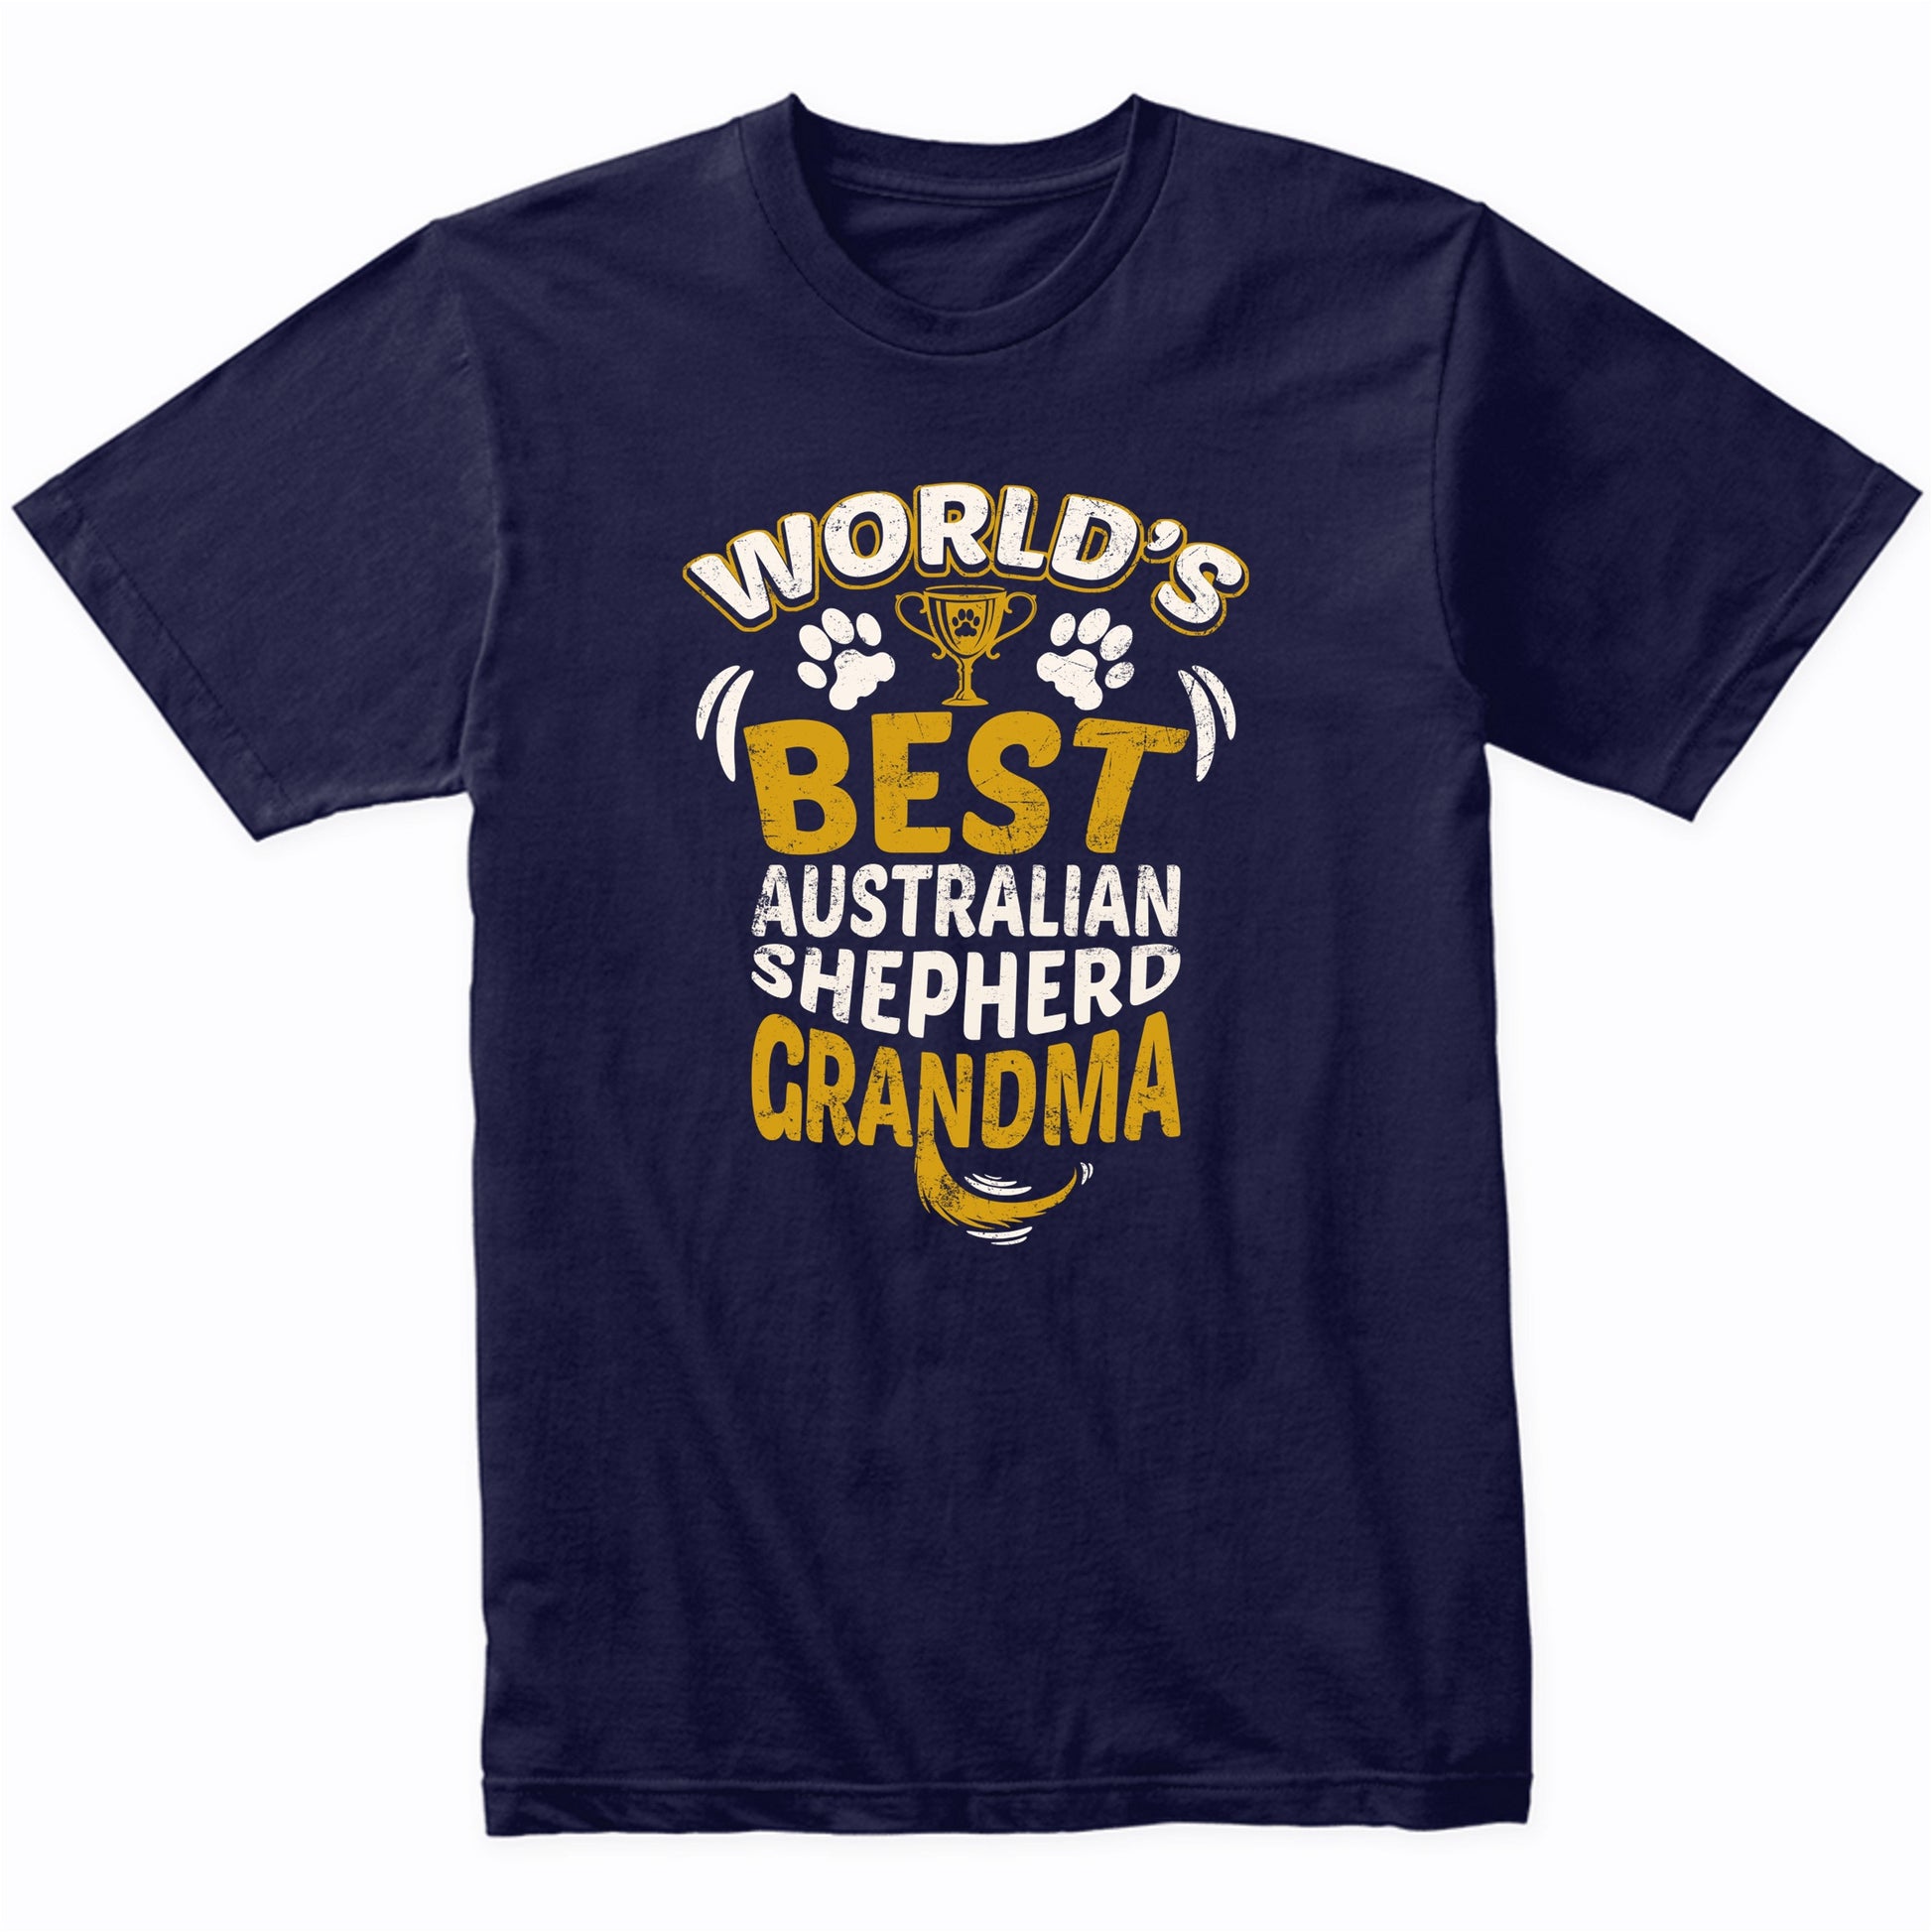 World's Best Australian Shepherd Grandma Graphic T-Shirt